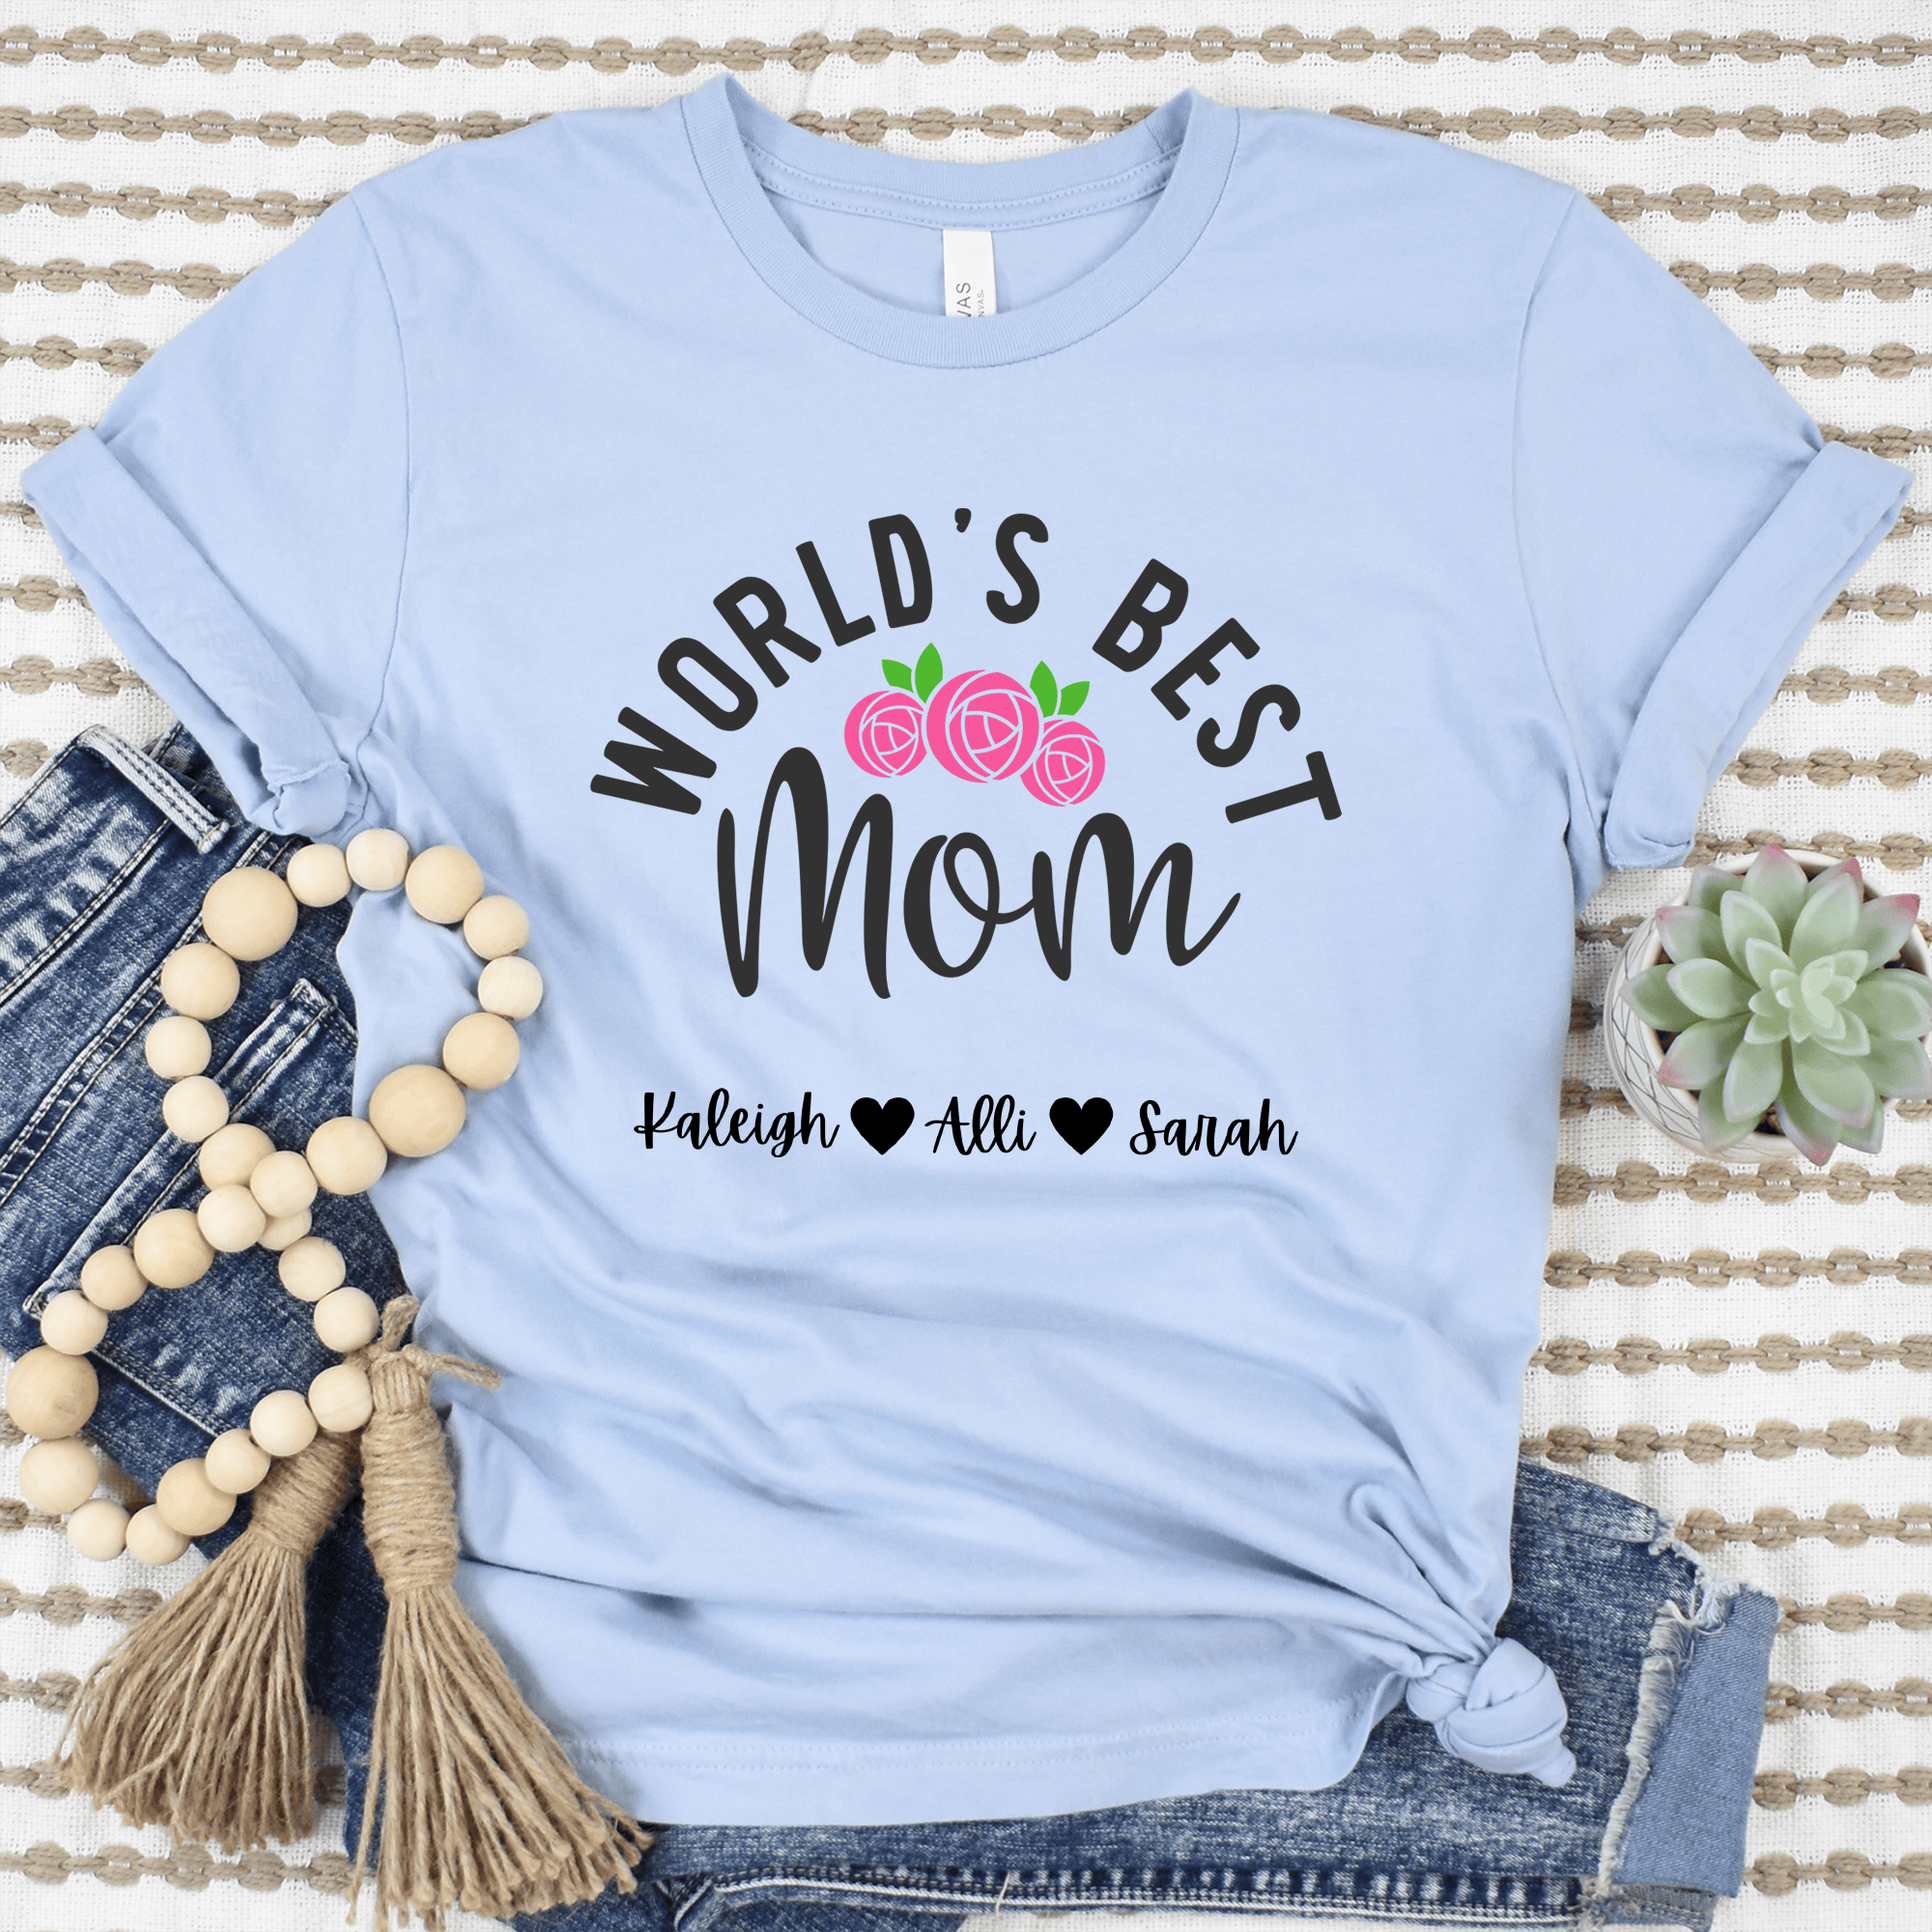 Womens Light Blue T Shirt with Worlds-Best-Mom design